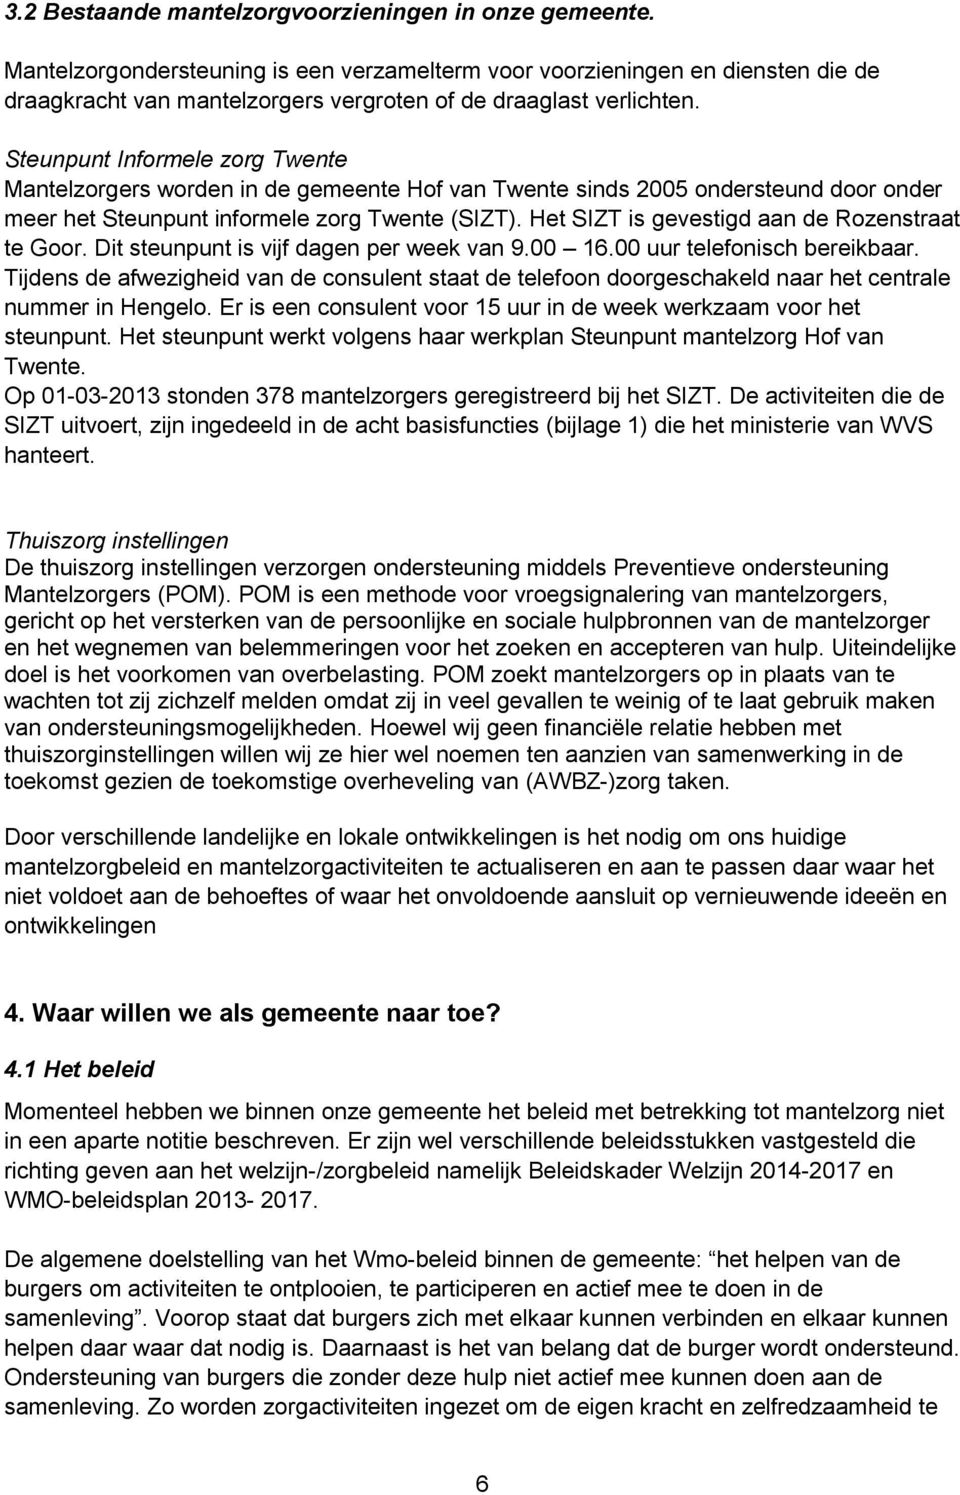 Steunpunt Informele zorg Twente Mantelzorgers worden in de gemeente Hof van Twente sinds 2005 ondersteund door onder meer het Steunpunt informele zorg Twente (SIZT).